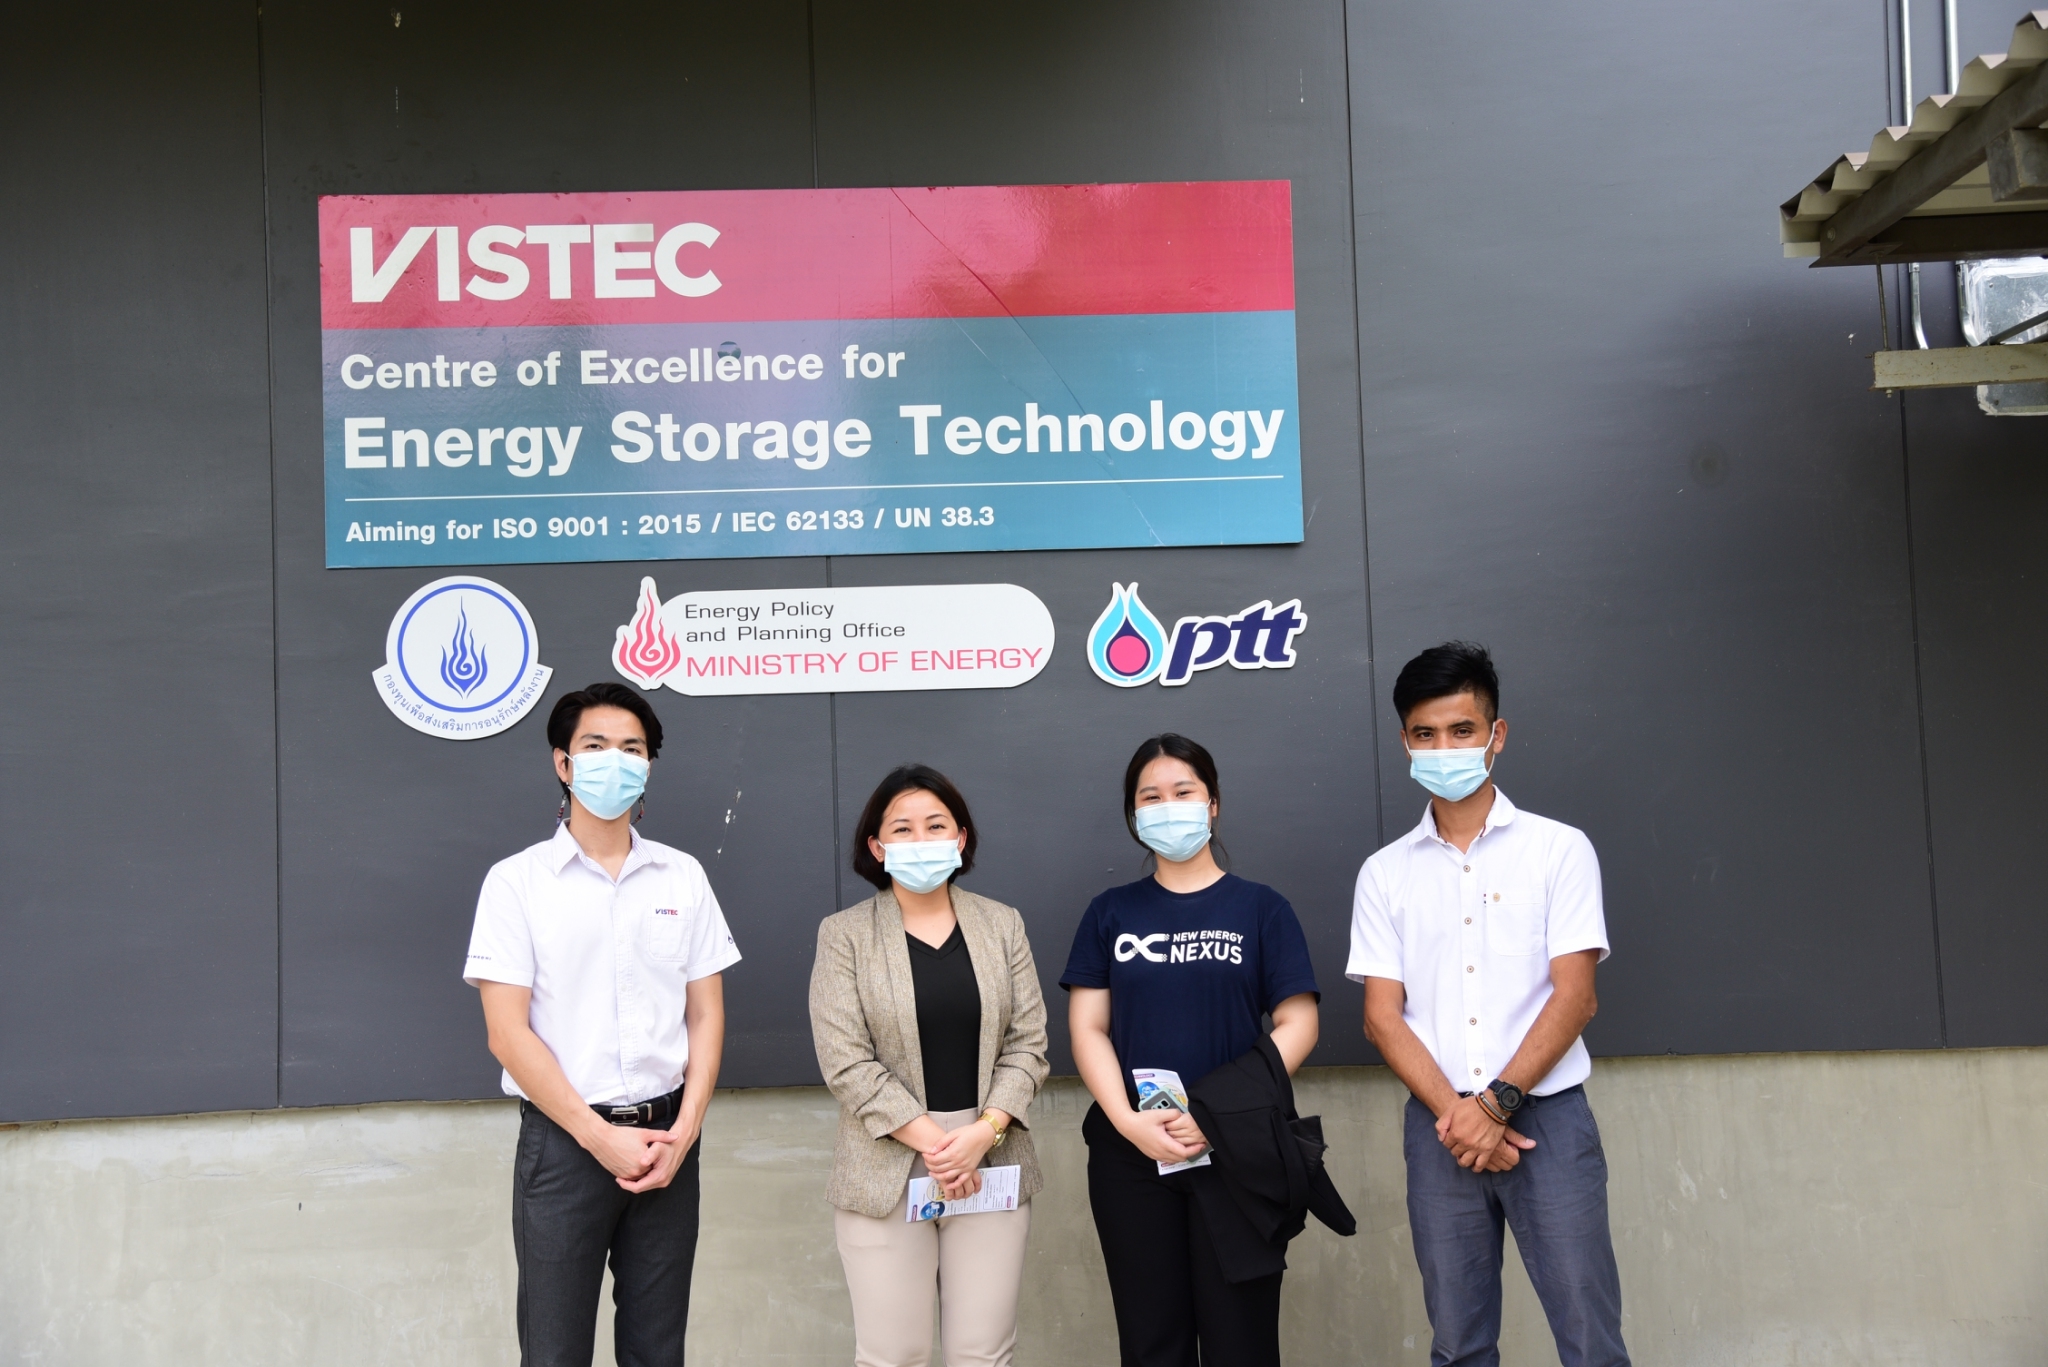 ขอขอบคุณ New Energy Nexus (Thailand) ที่ได้ให้ความสนใจมาเยี่ยมชม ผลงาน และความก้าวหน้าในการดำเนินงานของศูนย์ความเป็นเลิศด้านเทคโนโลยีกักเก็บพลังงาน (CEST)  ในพื้นที่วังจันทร์วัลเลย์ เขตนวัตกรรมระเบียงเศรษฐกิจพิเศษภาคตะวันออก วันที่ 25-02-2564